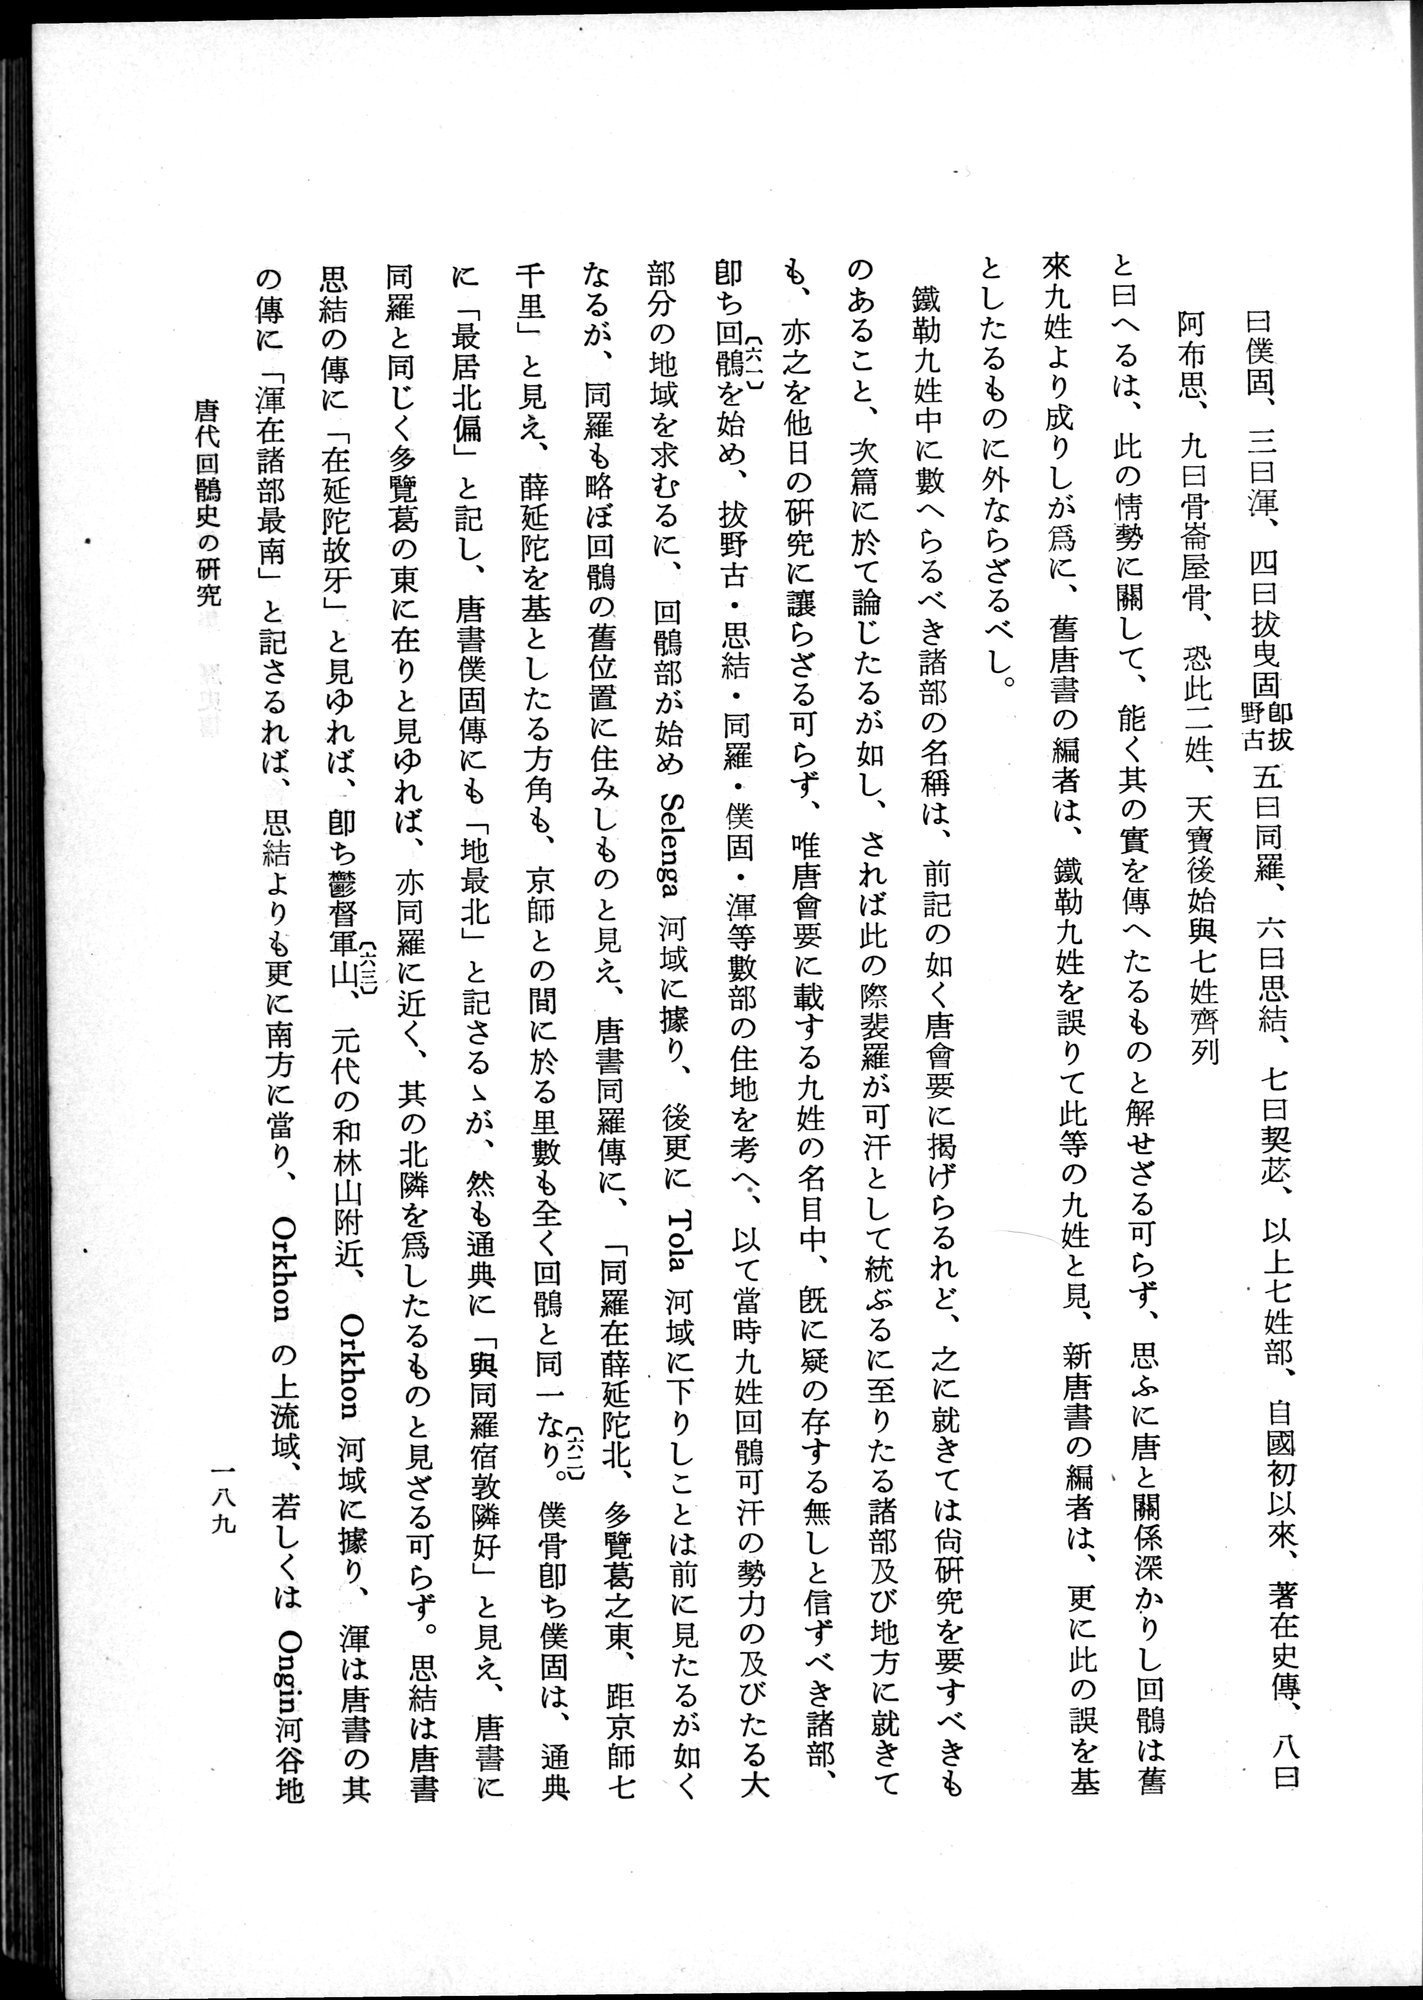 羽田博士史学論文集 : vol.1 / 227 ページ（白黒高解像度画像）